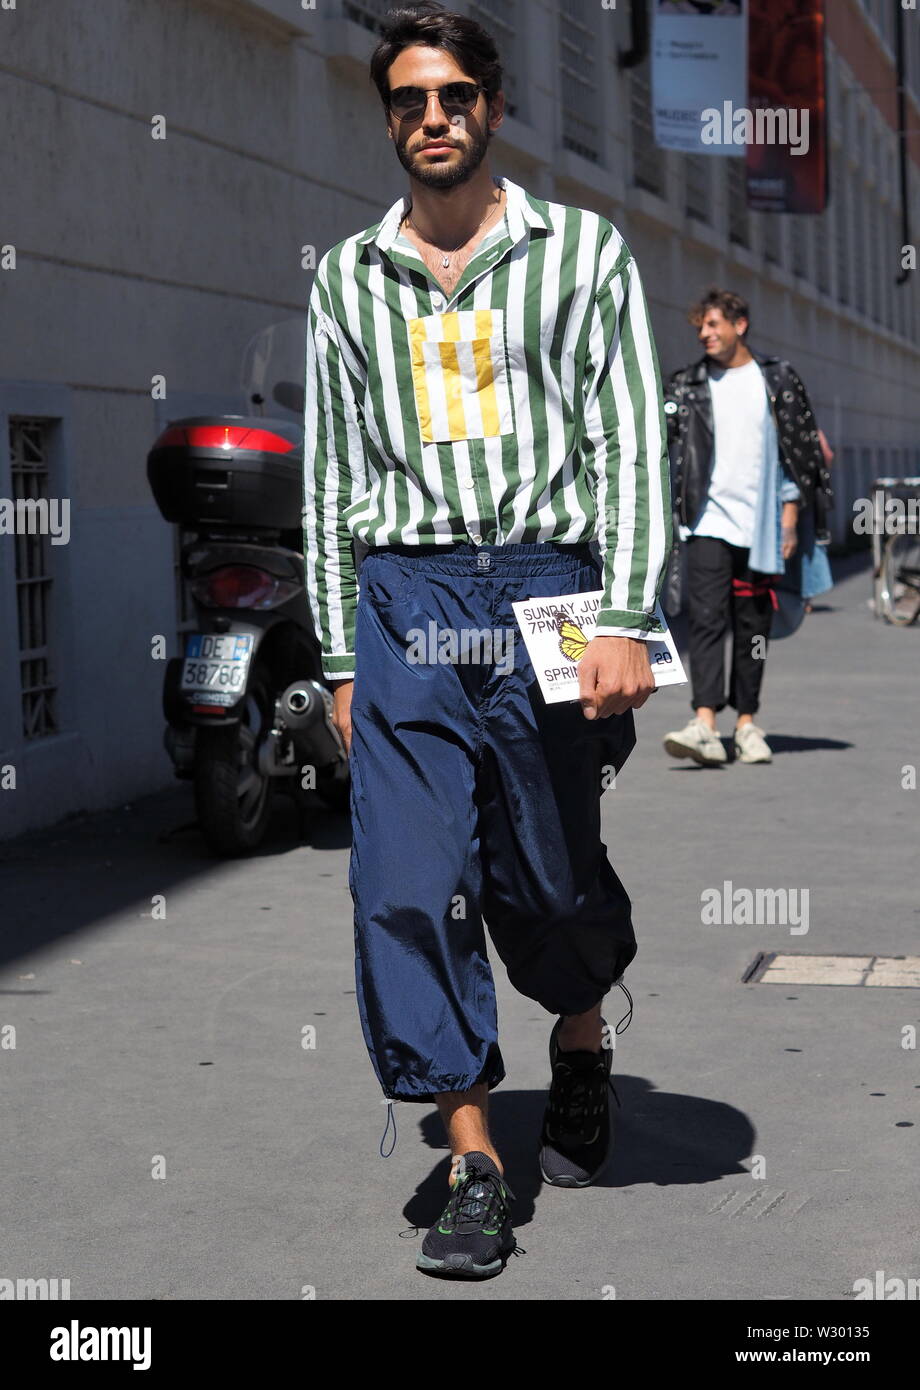 Milán, Italia: 16 de junio de 2019: blogger de moda street style outfit Youser Fashion durante la Semana de la moda de hombre en 2019/2020 Fotografía de stock Alamy